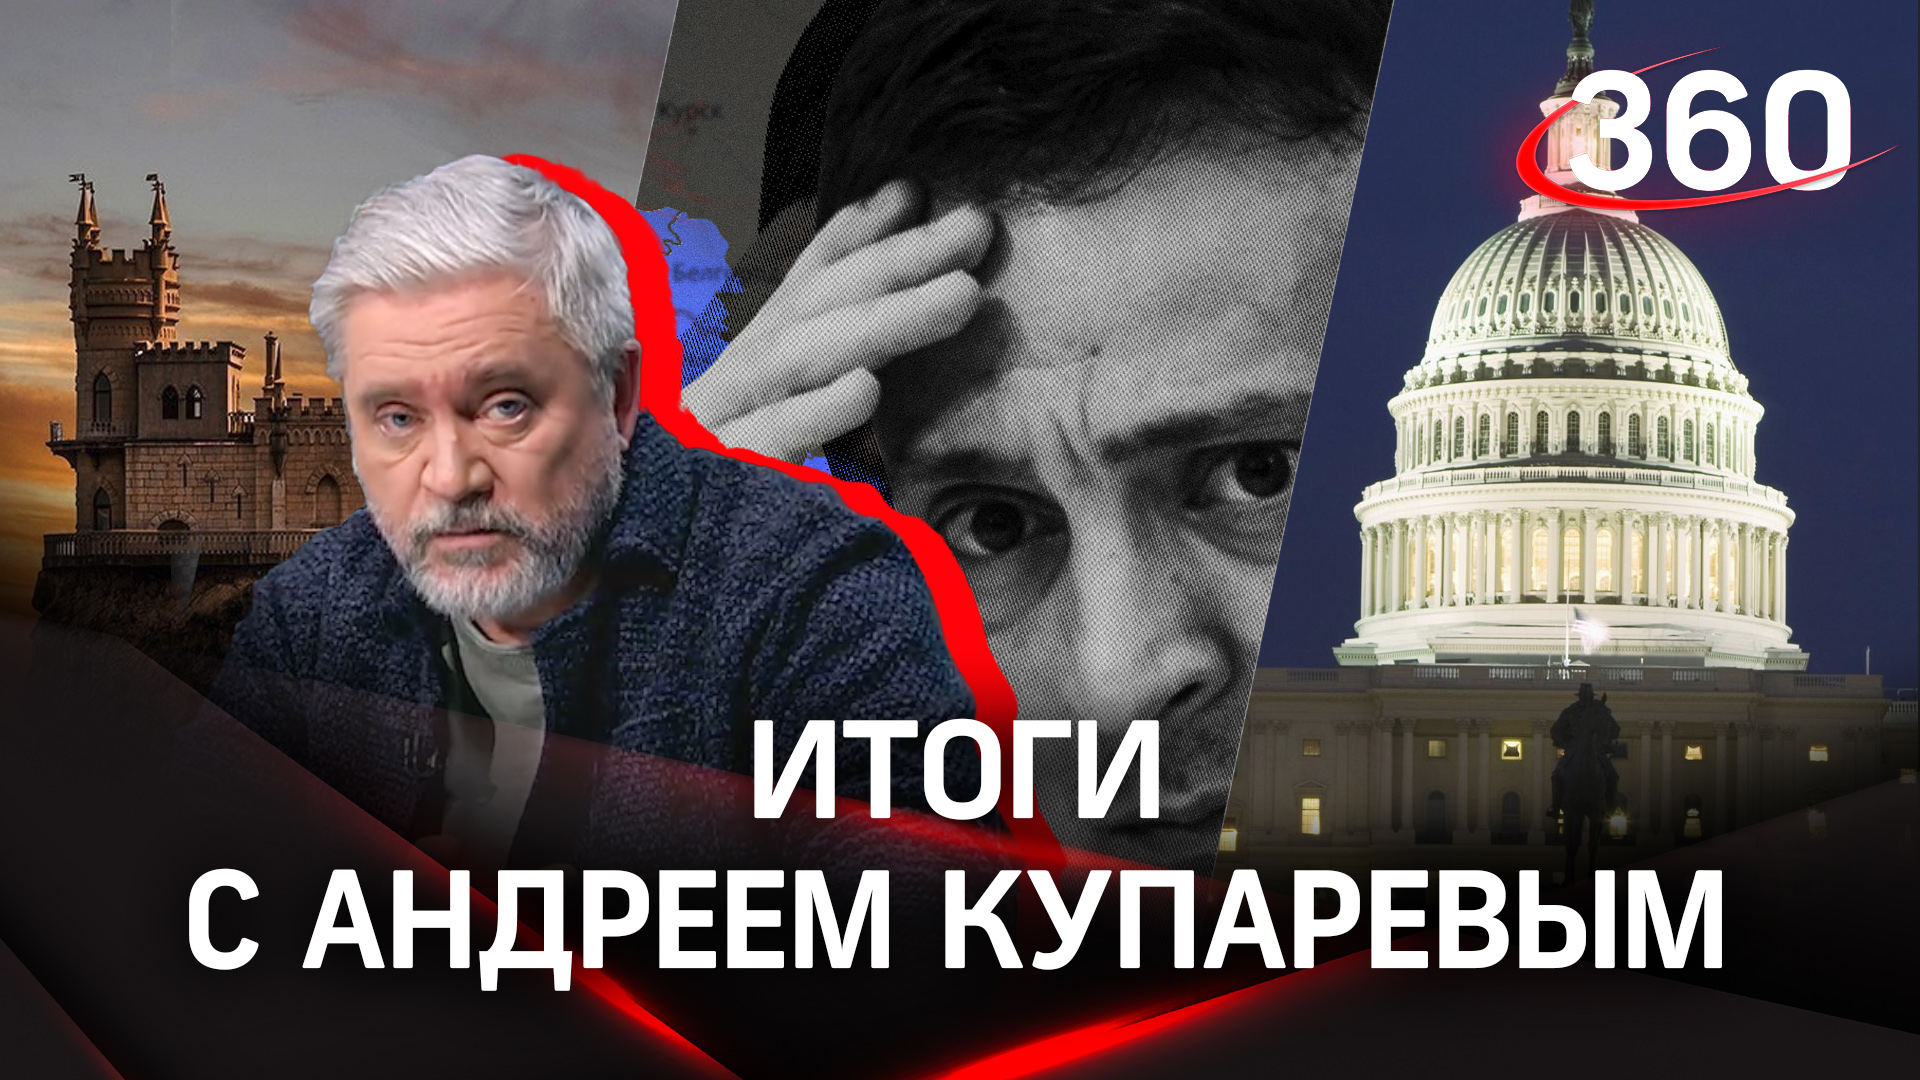 9 лет воссоединению Крыма с Россией. Итоги недели на «360» | Андрей Купарев